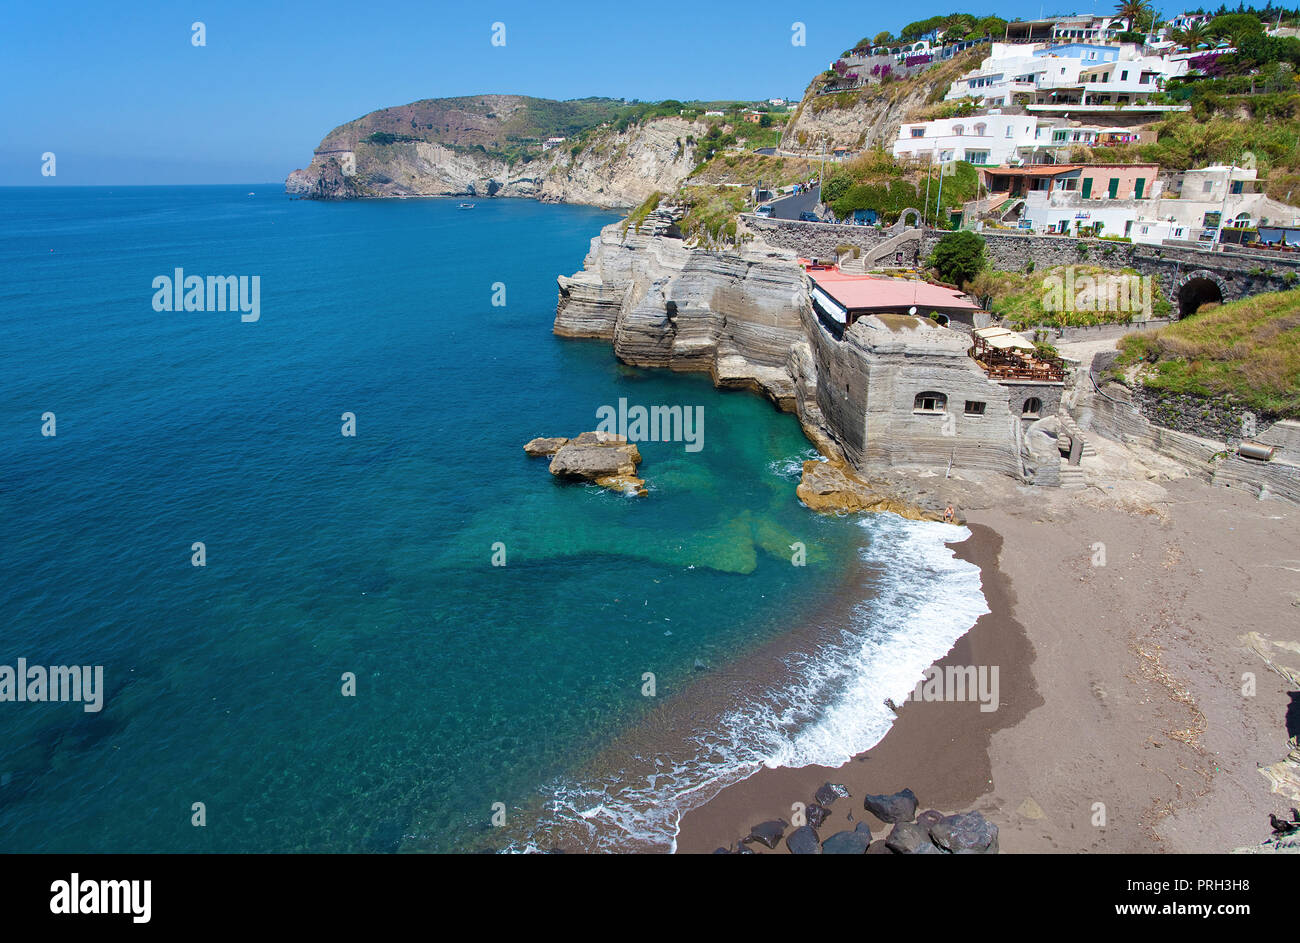 Picturesque coastline of Sant' Angelo, Ischia island, Gulf of Neapel, Italy Stock Photo